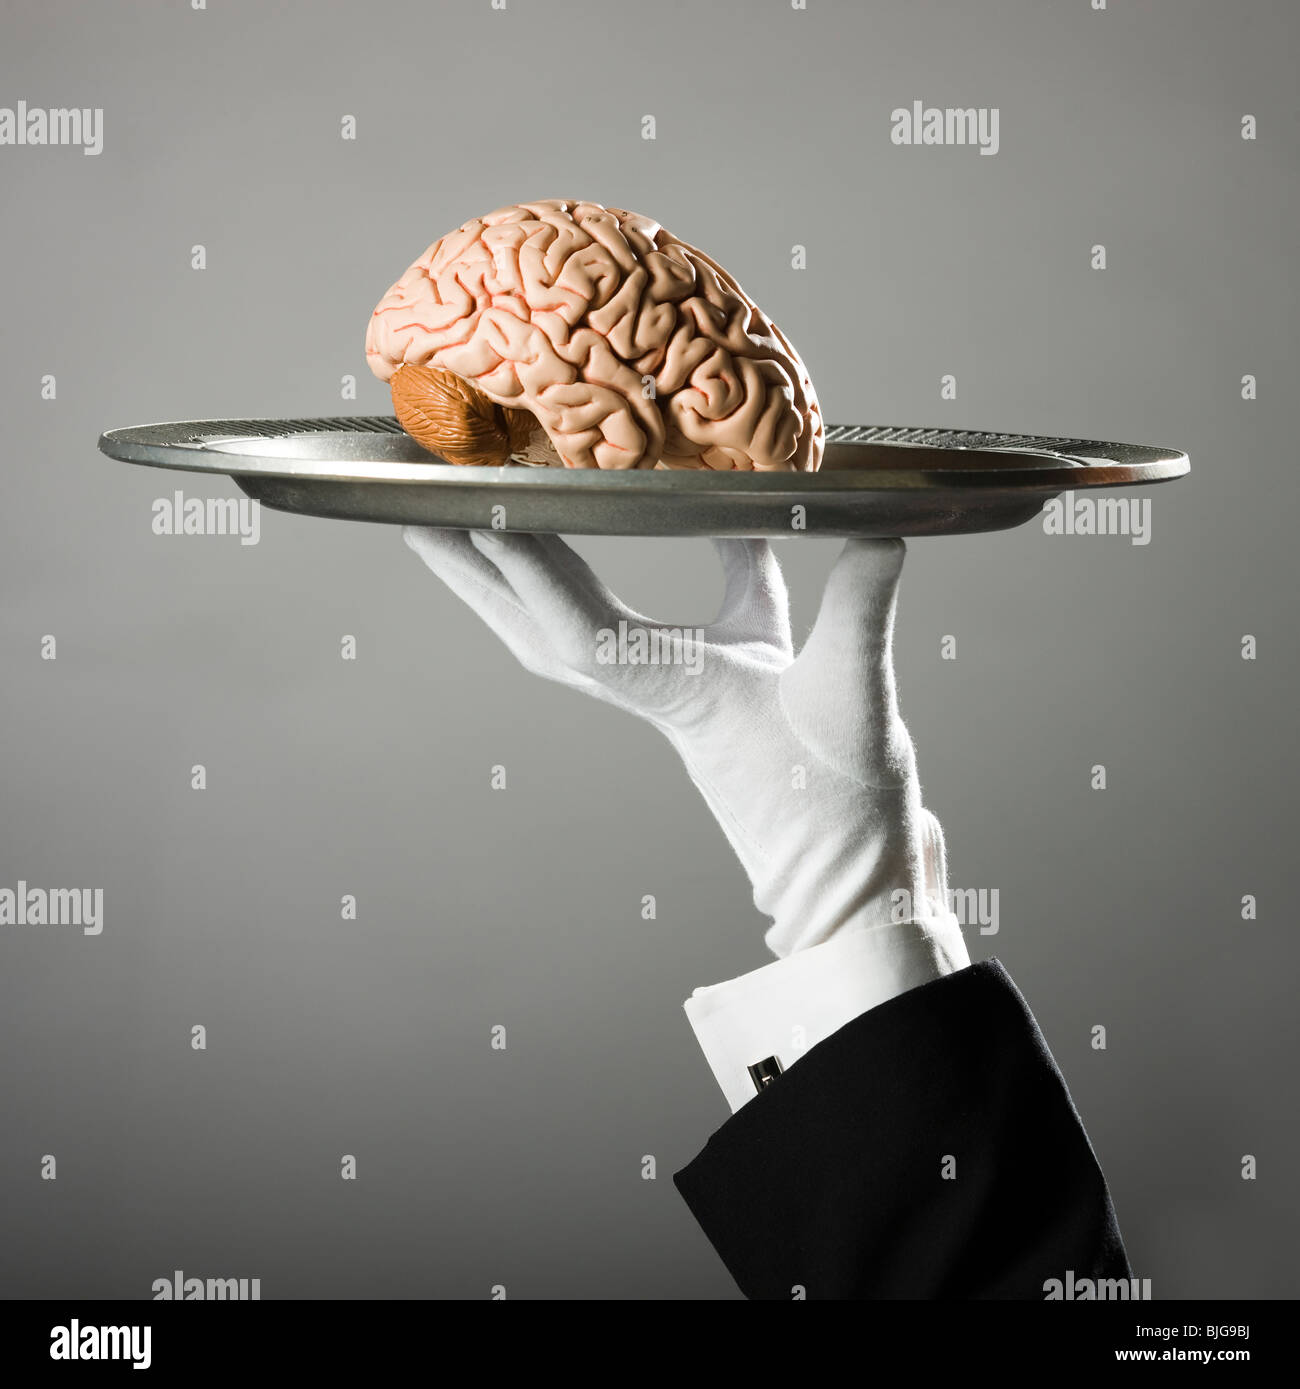 Cerebro en un plato Foto de stock